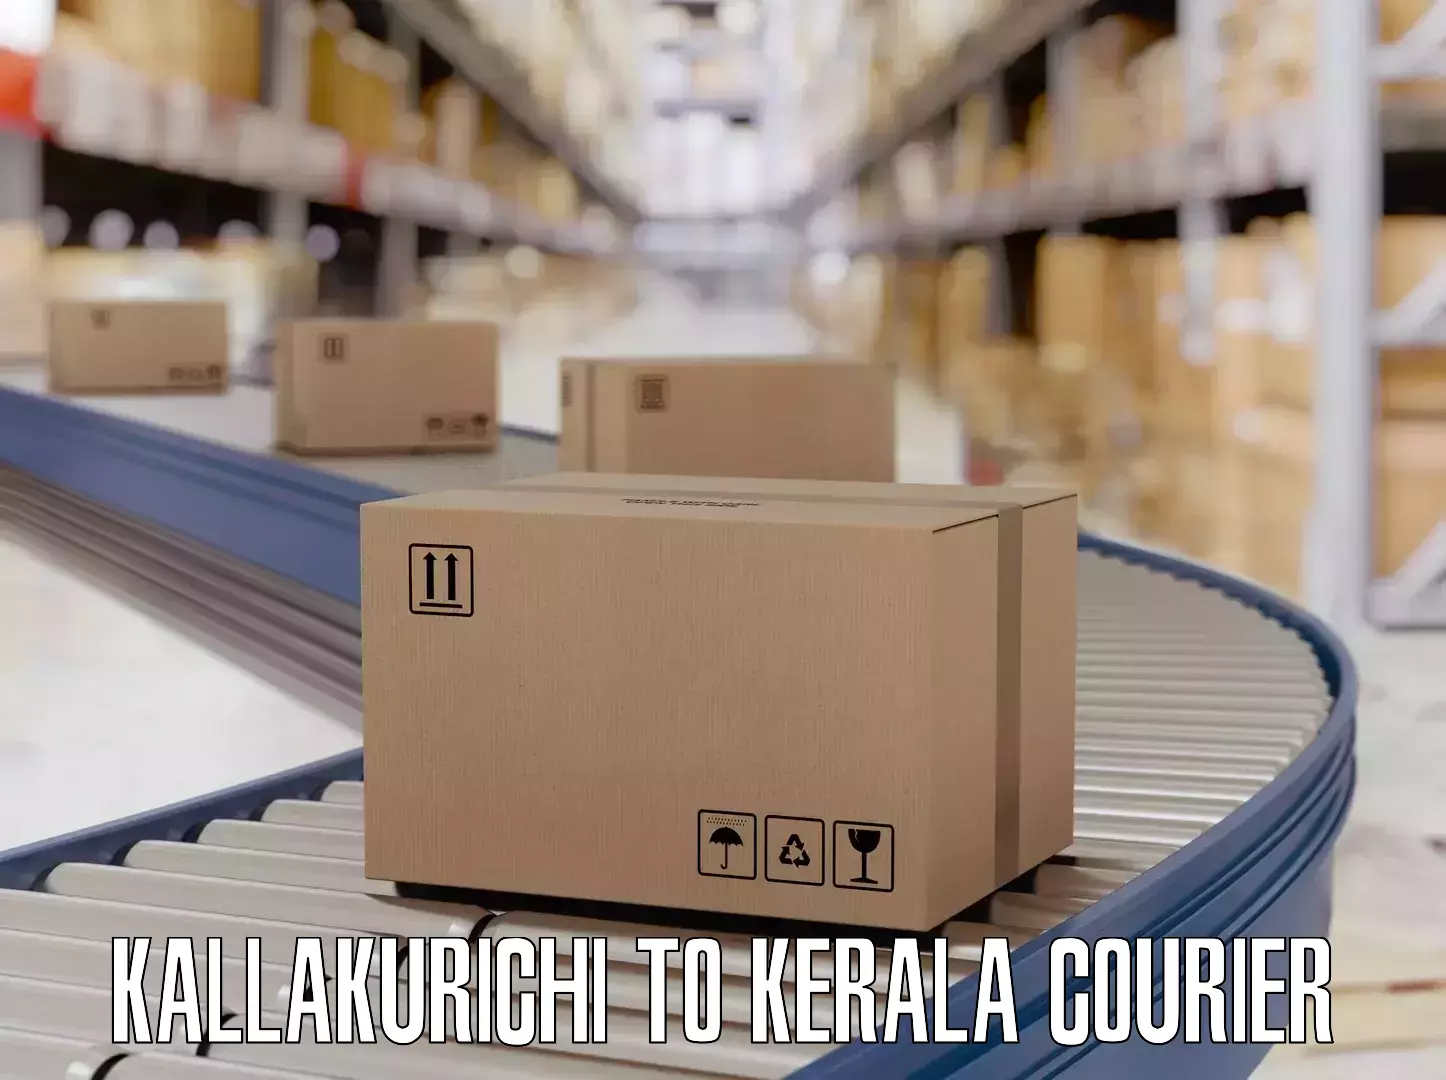 Luggage delivery rates in Kallakurichi to Kayamkulam